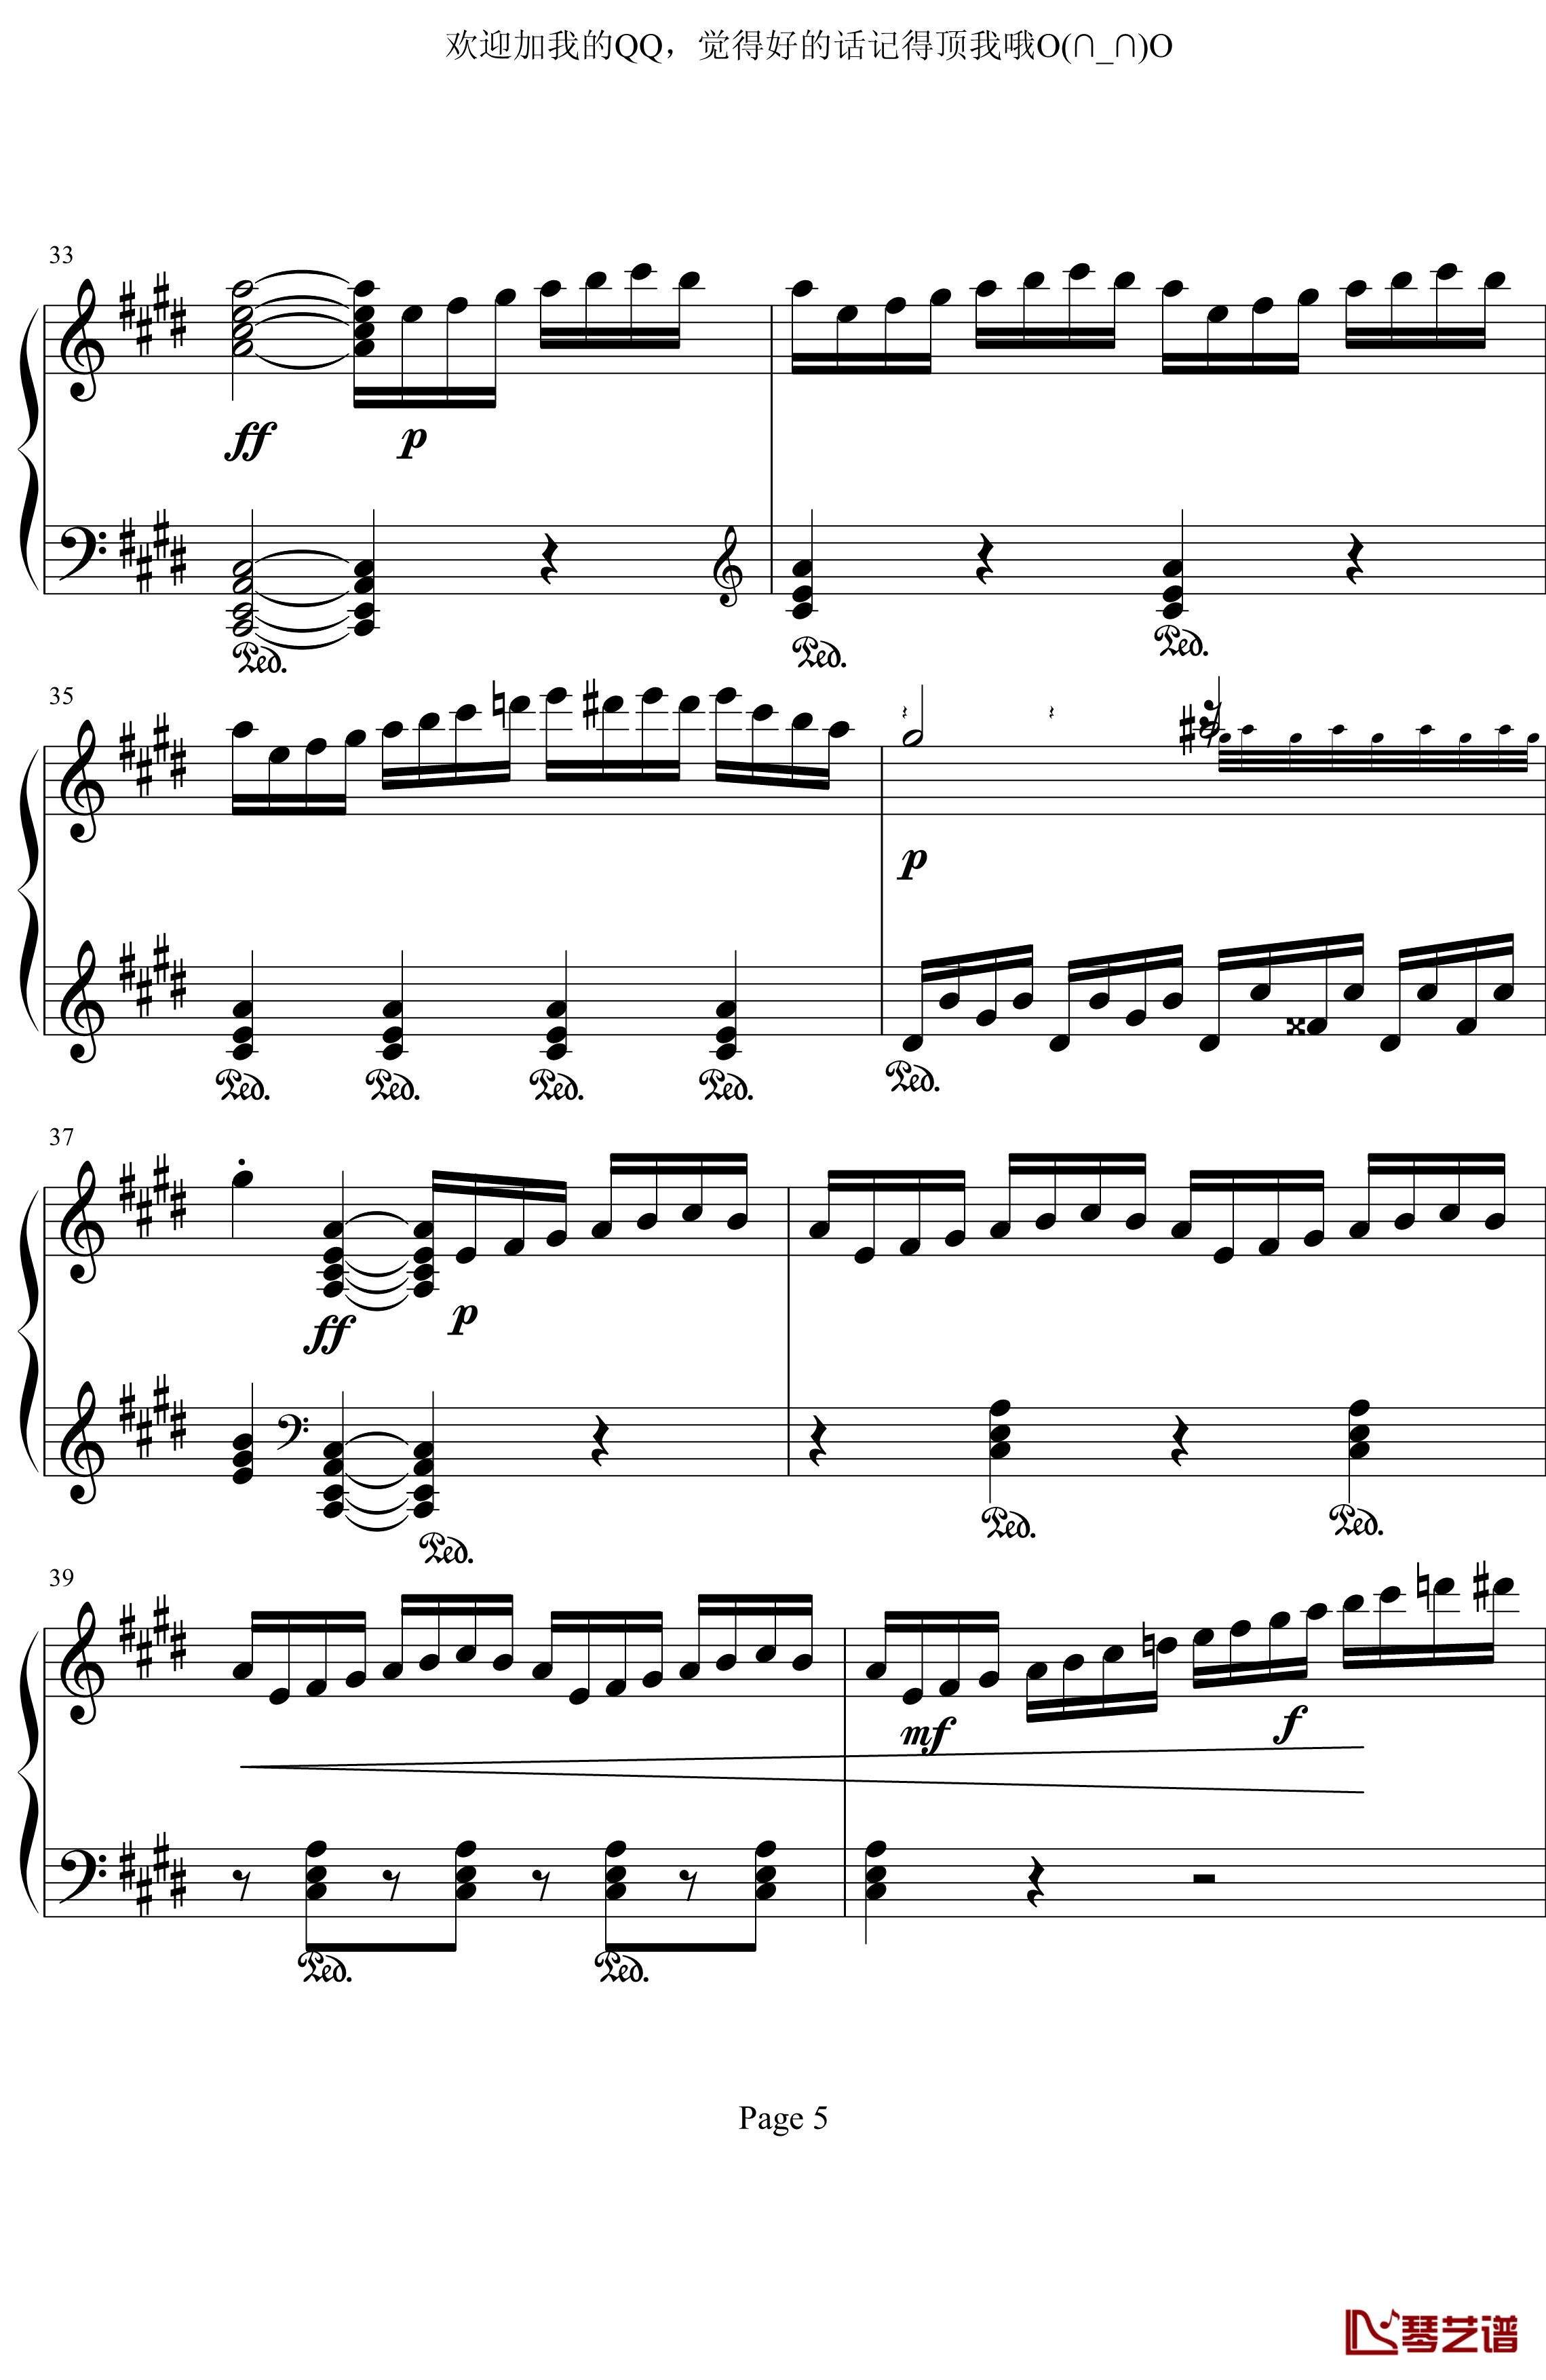 月光奏鸣曲第三乐章钢琴谱-贝多芬-beethoven5